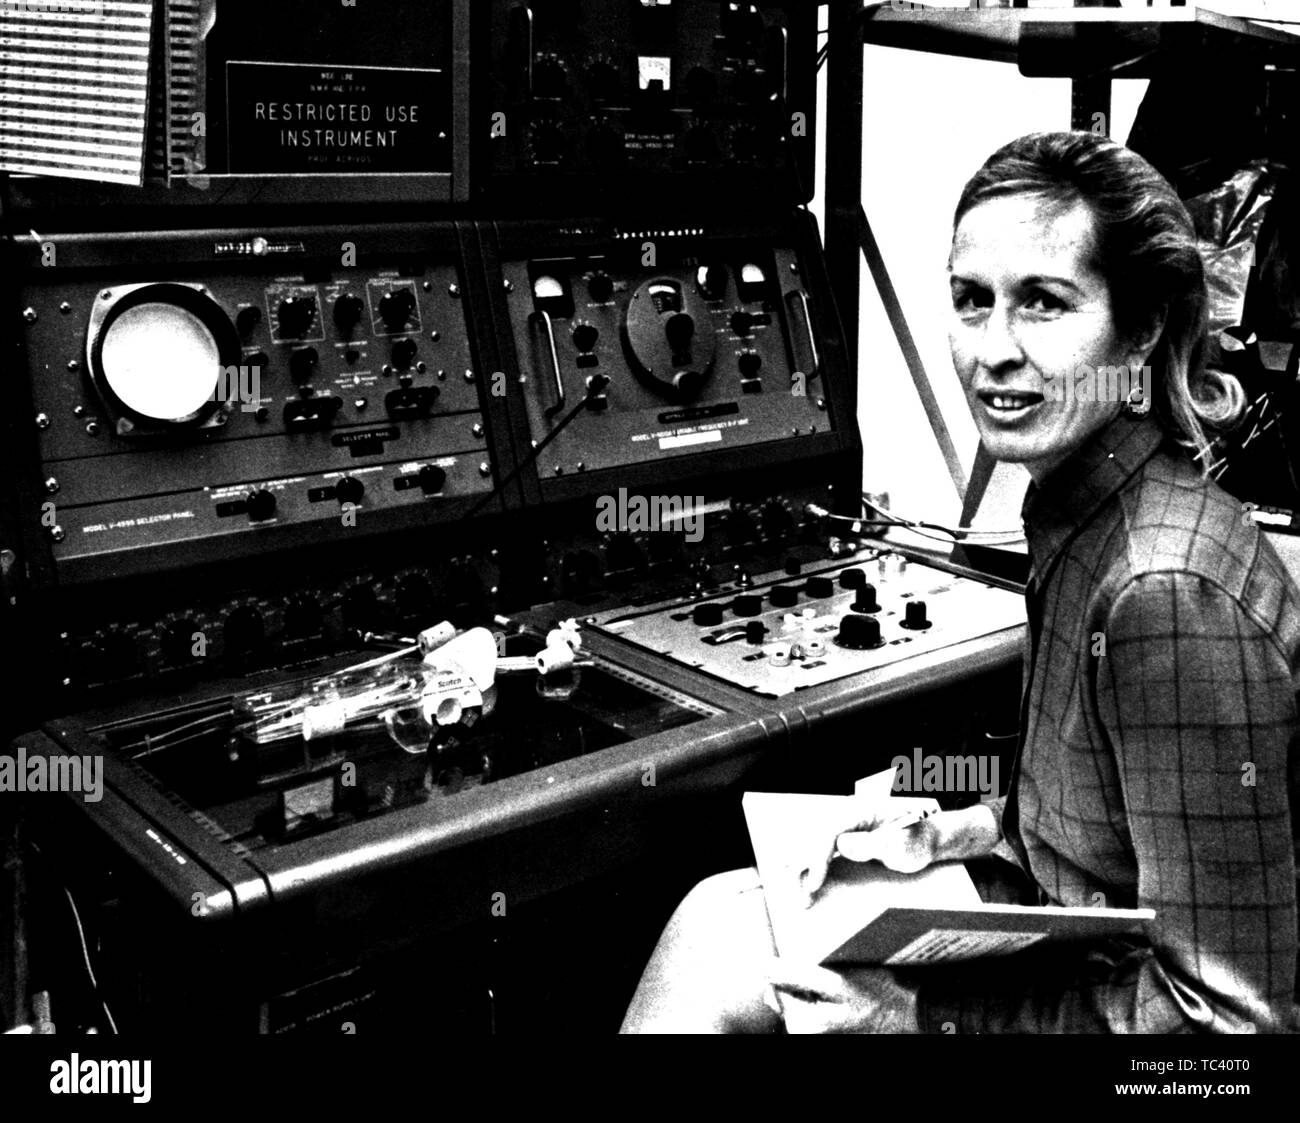 Professeur de biologie de l'Université d'État de Californie Ellen Weaver développe les instruments à utiliser dans les satellites pour la surveillance des océans, le 8 février 1973. Droit avec la permission de la National Aeronautics and Space Administration (NASA). () Banque D'Images